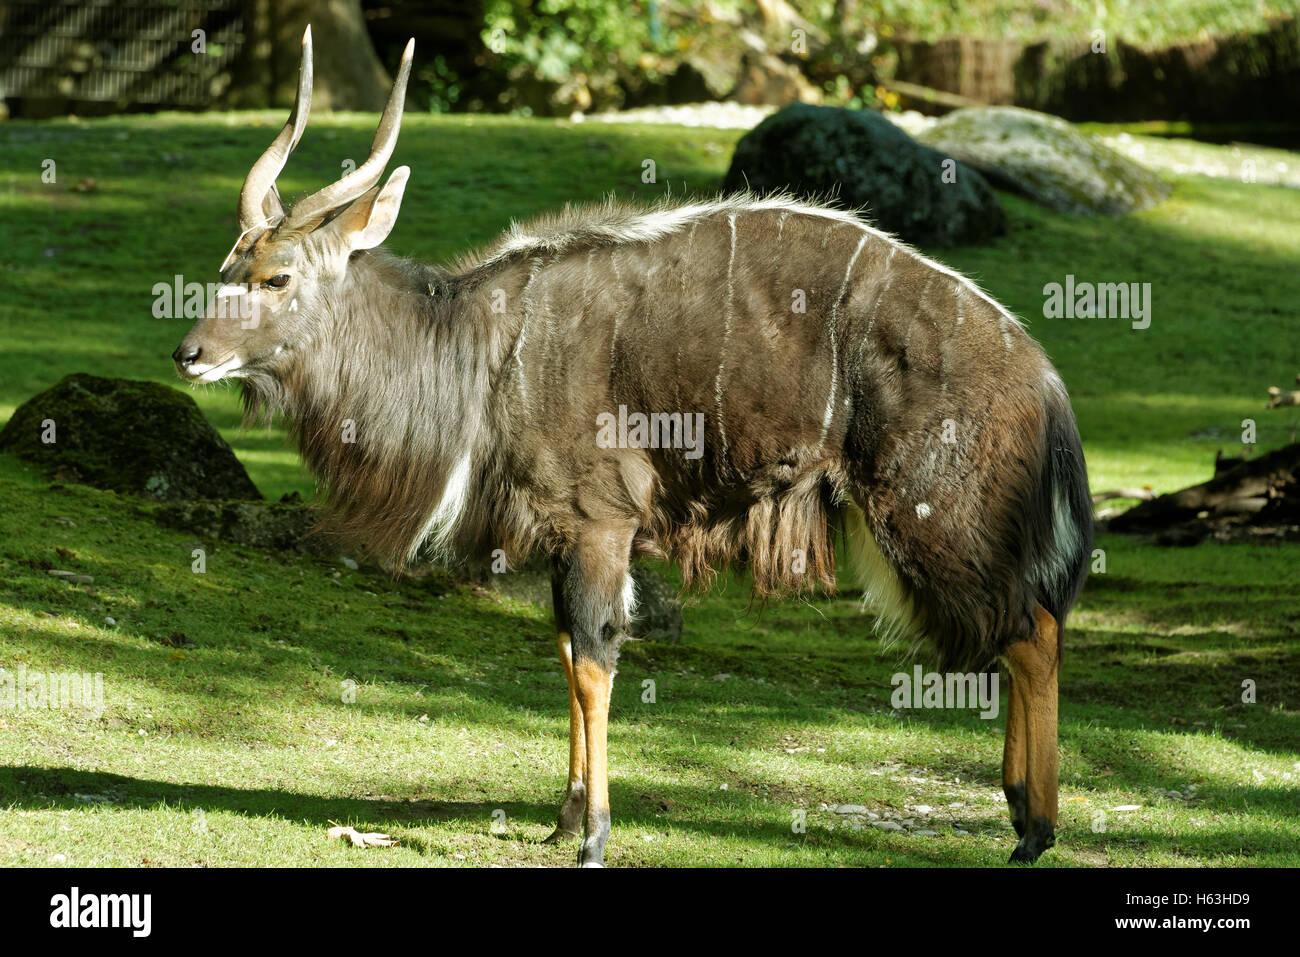 Nyala (Tragelaphus angasii), également appelé inyala est une antilope à cornes en spirale originaire du sud de l'Afrique. Banque D'Images